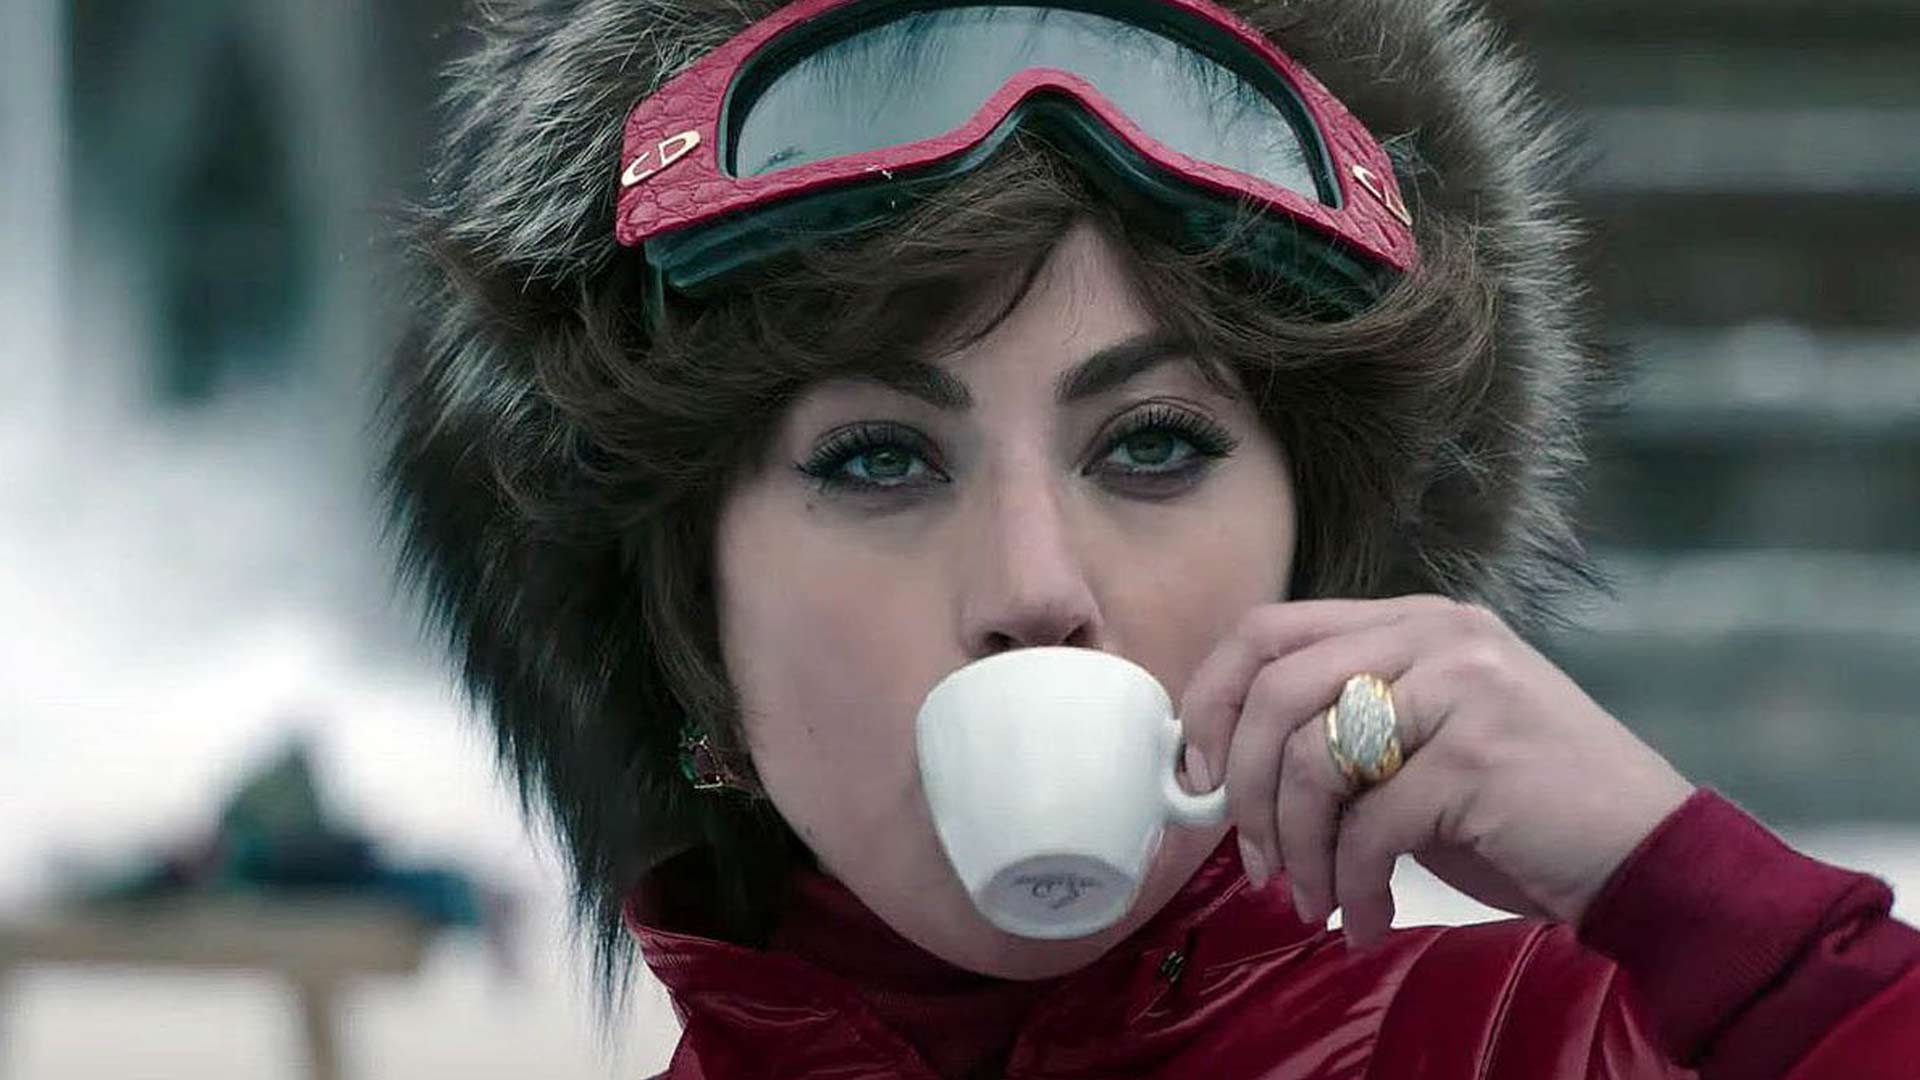 لیدی گاگا در حال خوردن چای و اسکی در فیلم خانه گوچی